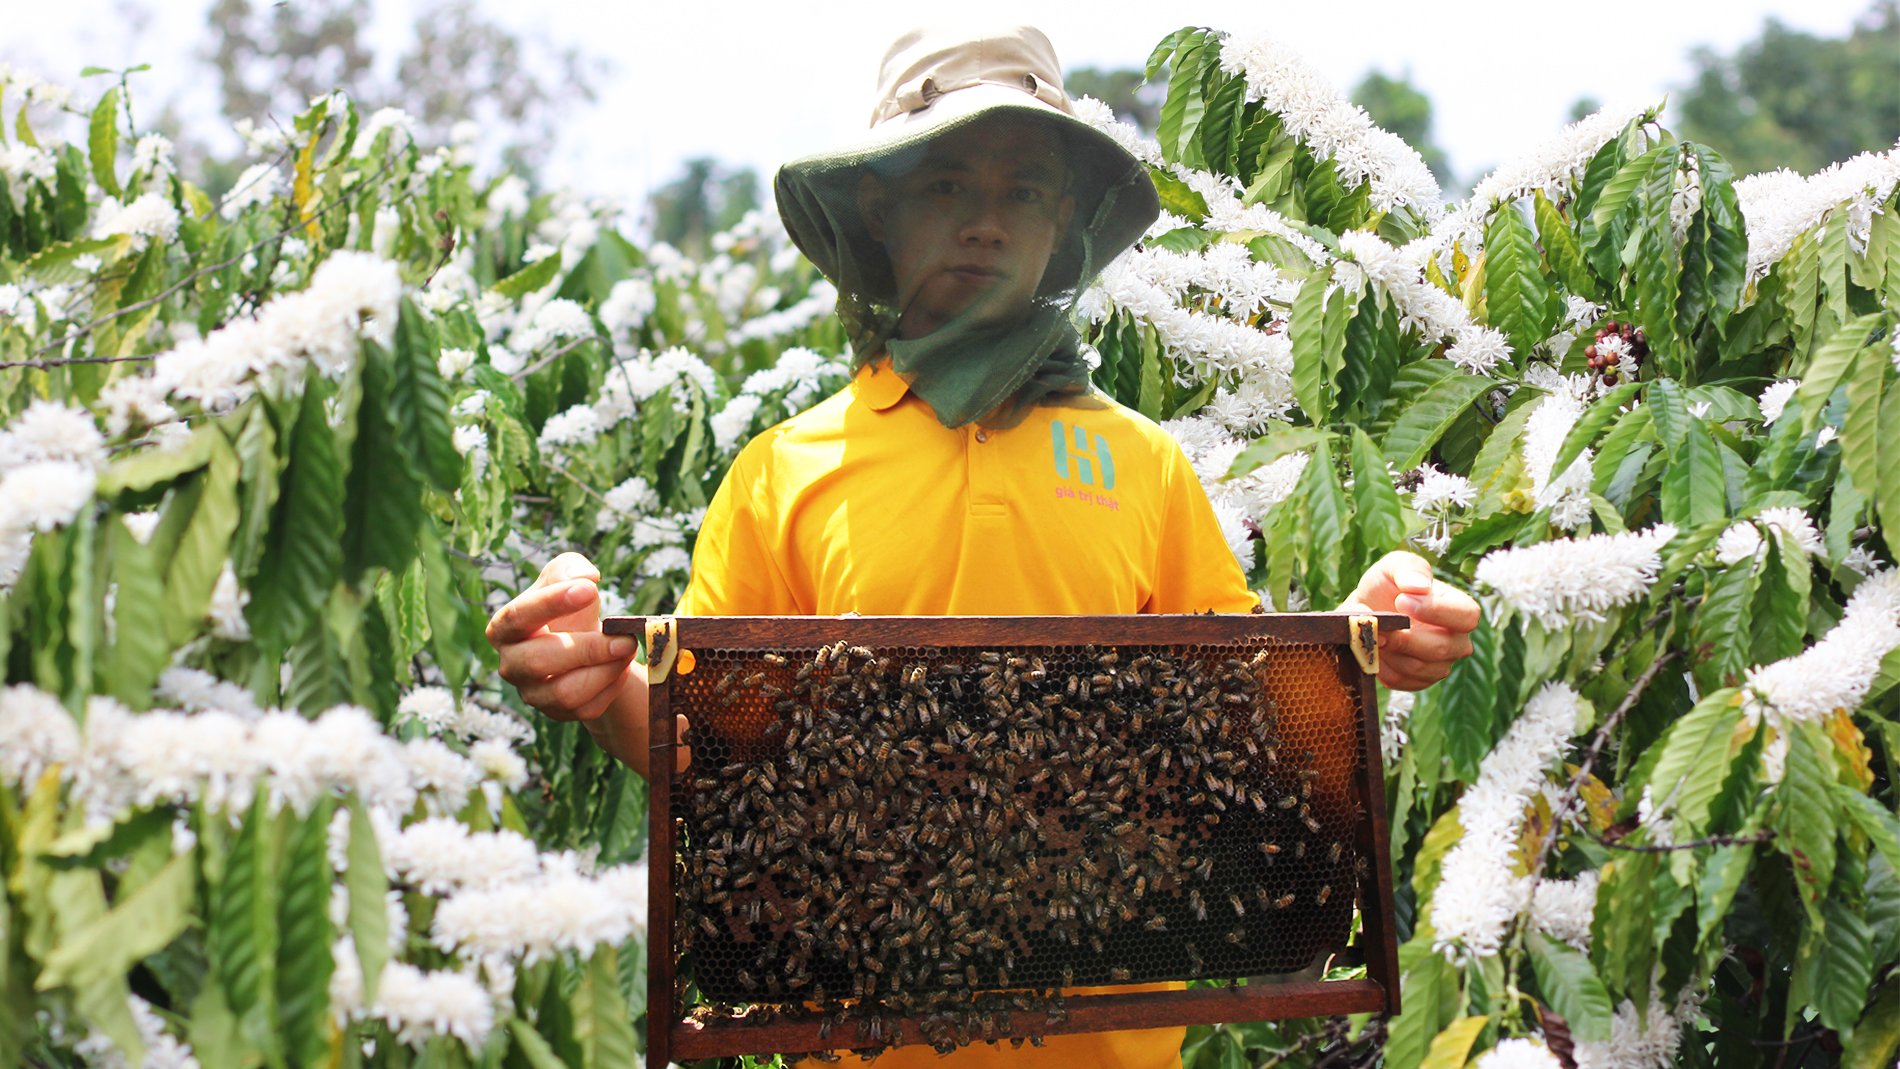 (Trợ giá Đặc Biệt) 1 Lít mật ong hoa cafe nguyên chất - mật thật giá trị thật - cam kết nguyên chất - tăng đề kháng ( MẬT ONG HỌ HỒ thuộc công ty Cà Phê Đức Anh ) mật ong bán chạy bách hóa